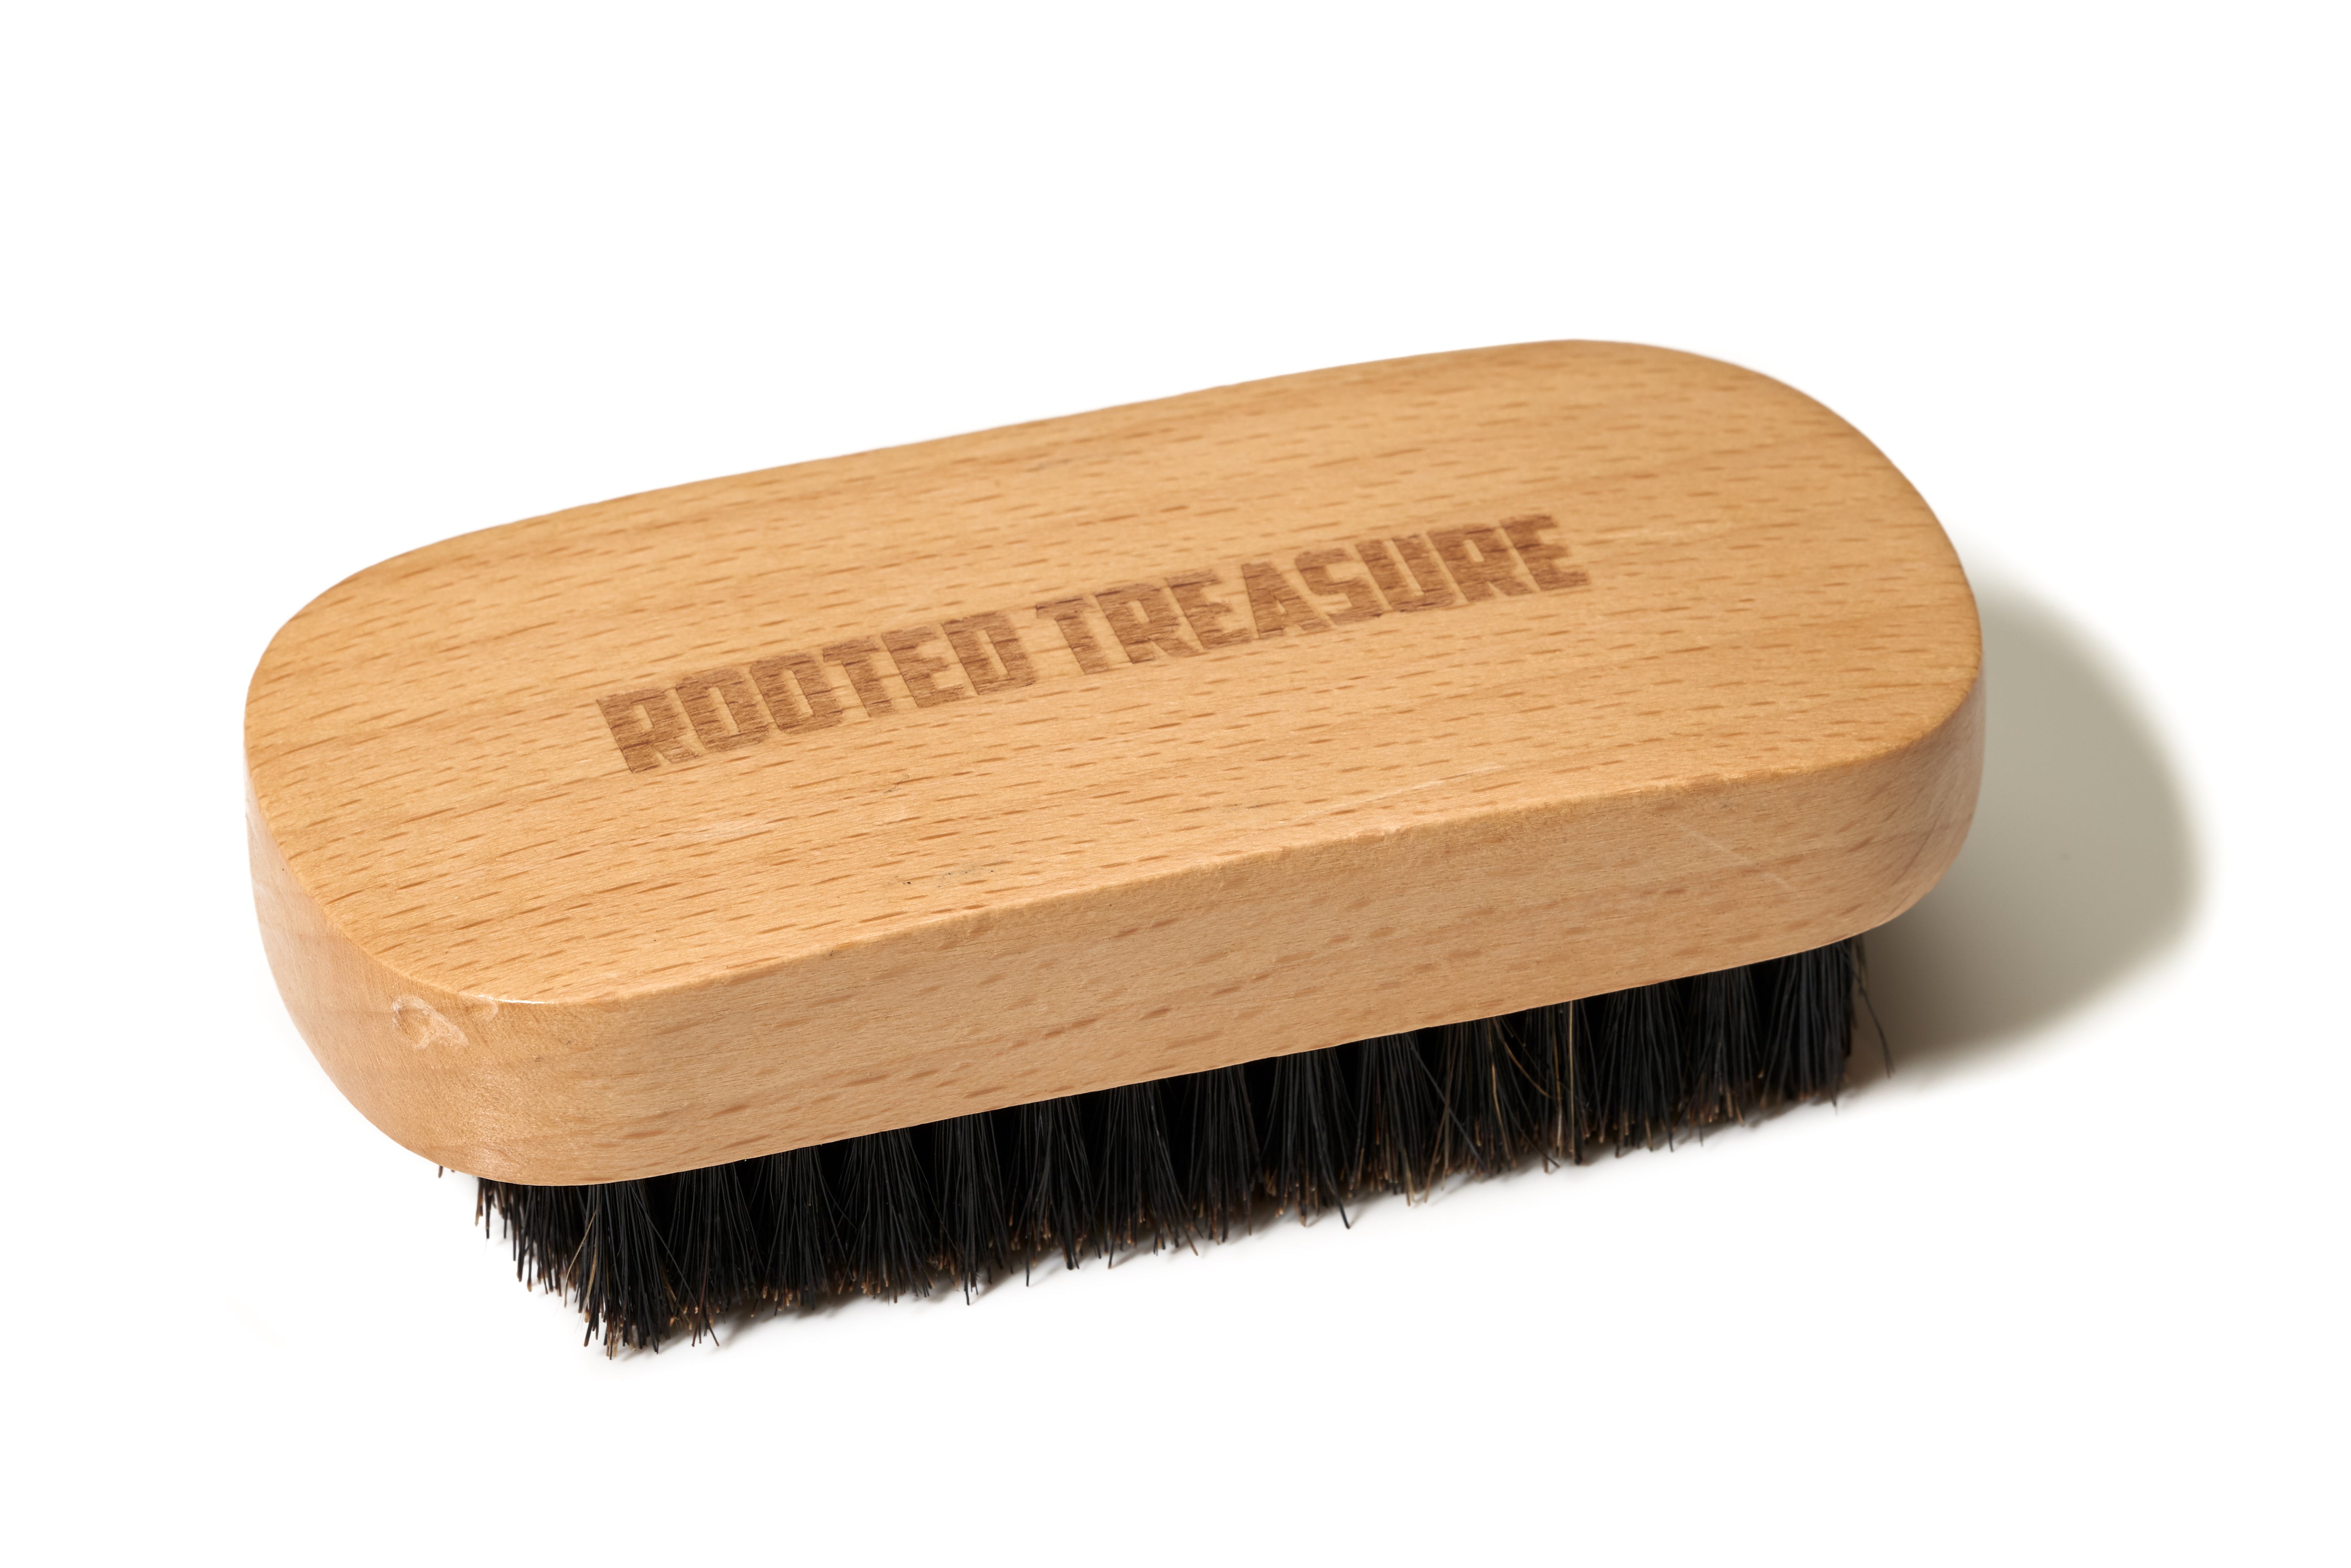 Rooted Treasure's Beard Brush